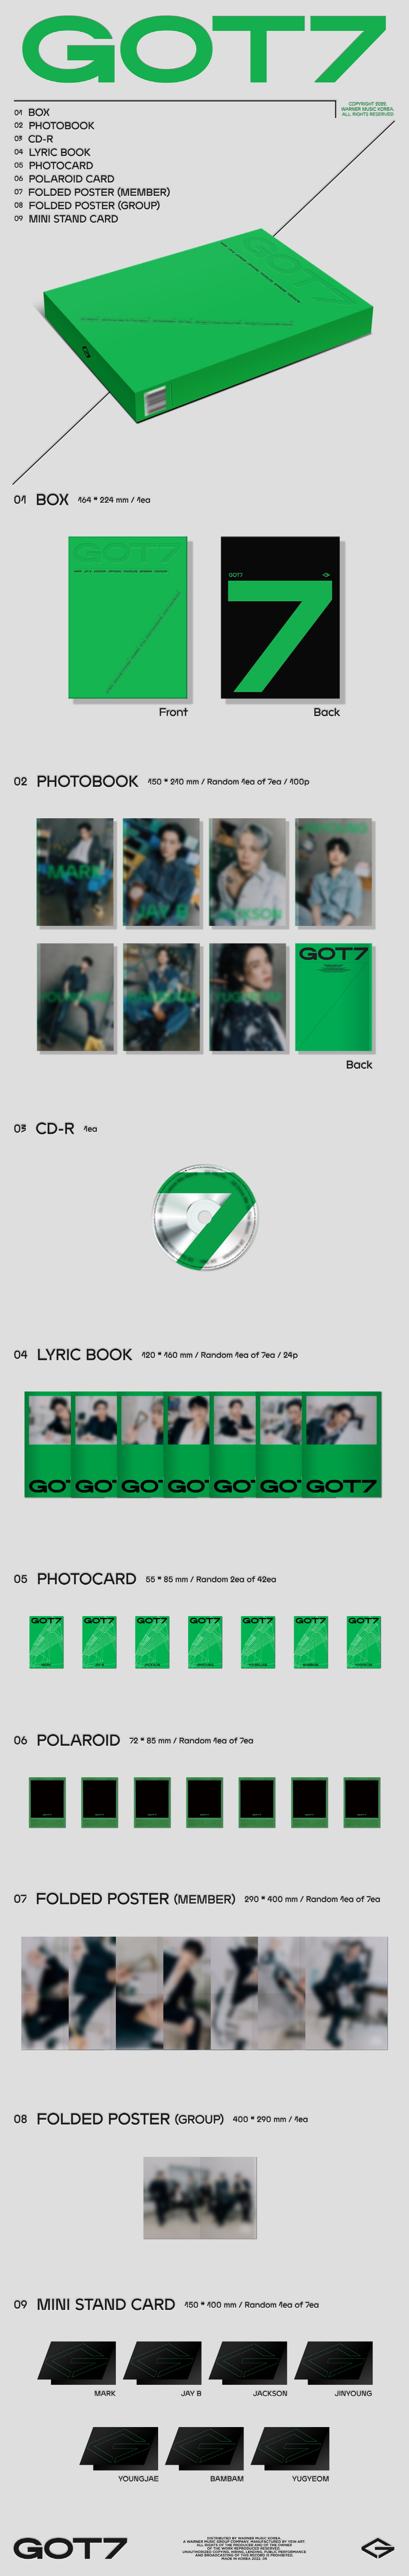 GOT7 - GOT7 (Random ver.) ( 12th Mini Album ) got7 got7album IGOT7 GOT7cd GOT7isOurName